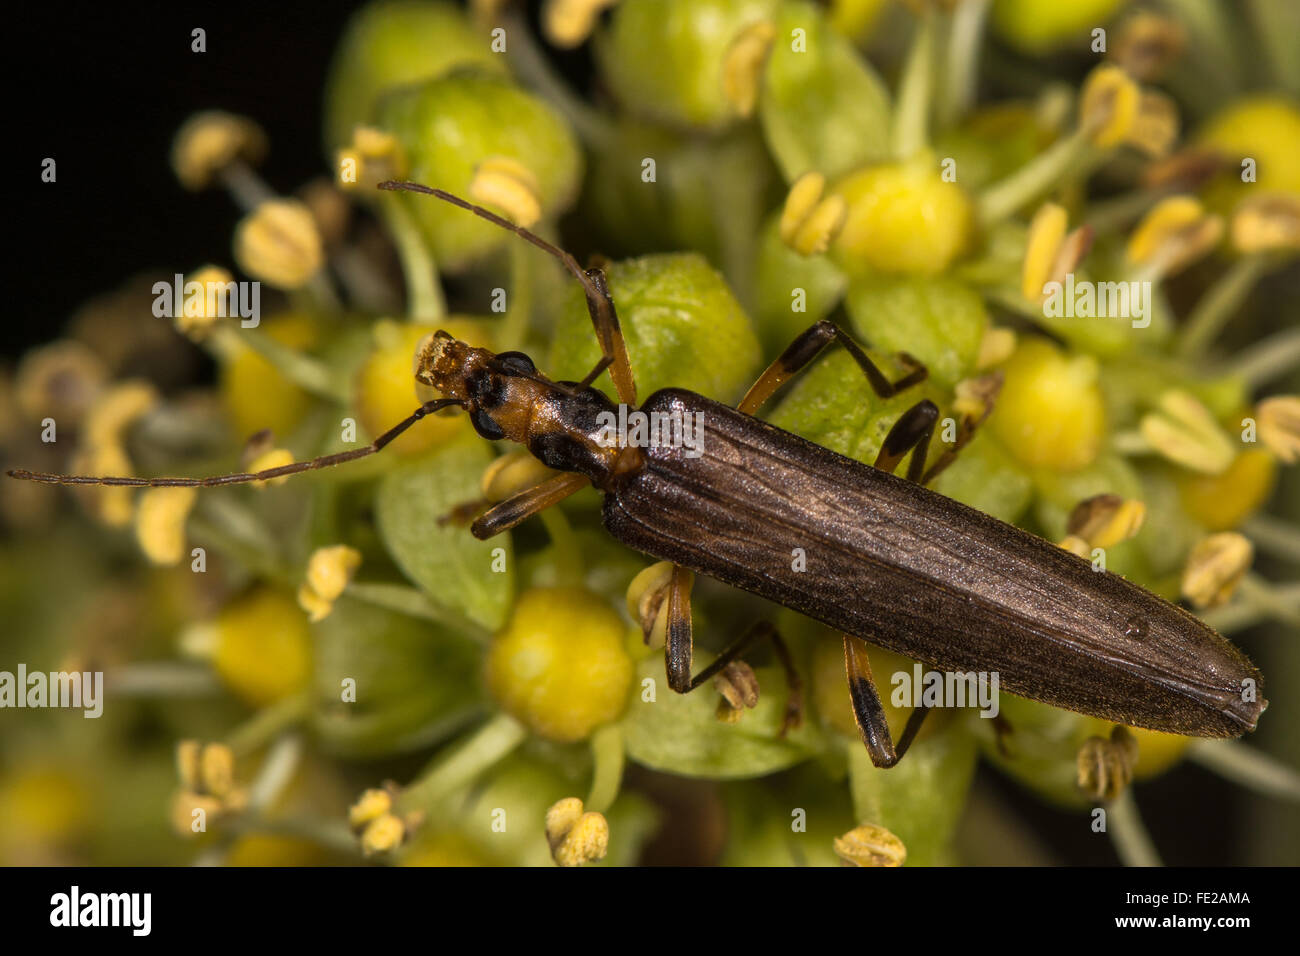 Oedemera femoralis escarabajo sobre ivy flores. Escarabajo de la familia Oedemeridae comer polen de ivy Foto de stock